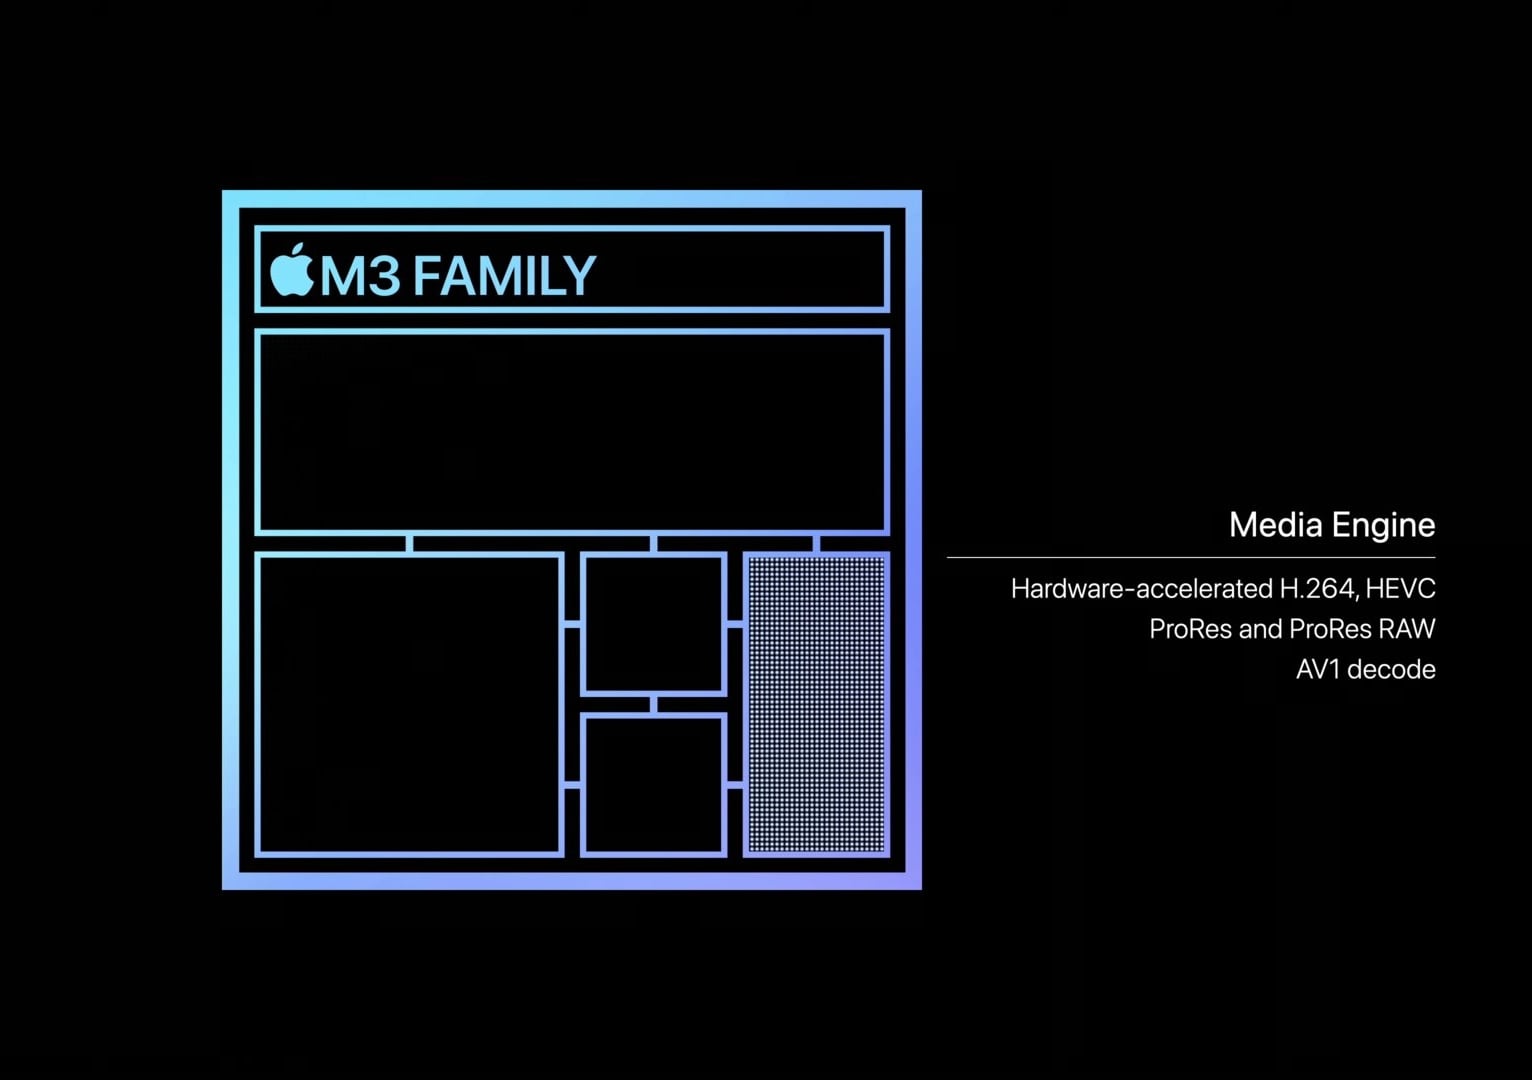 Apple keynote slide for the M3 chip listing AV1 decode support